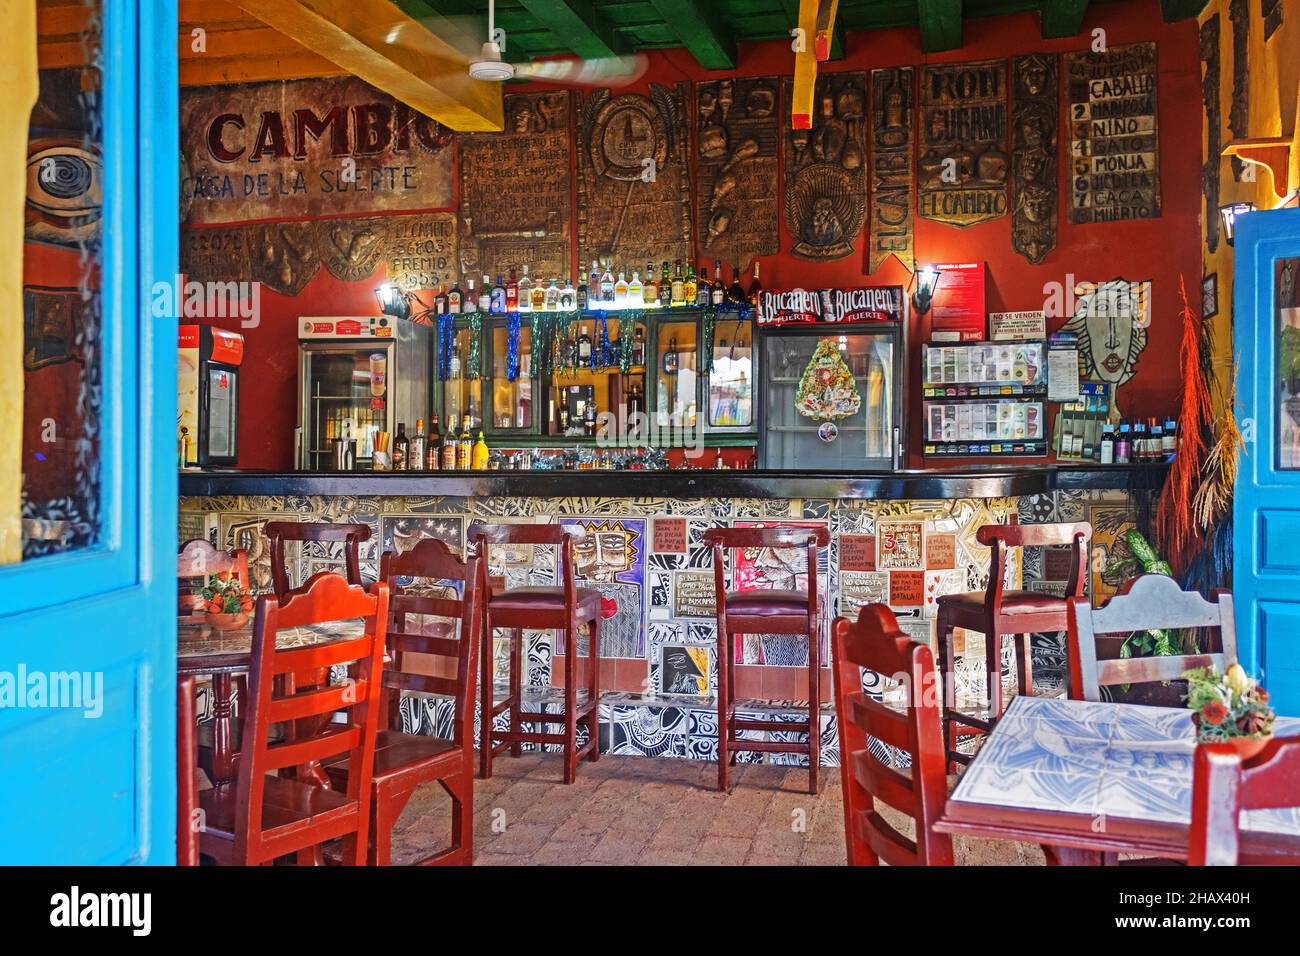 Interieur der traditionellen kubanischen Bar in der Altstadt der Stadt Camagüey auf der Insel Kuba, Karibik Stockfoto